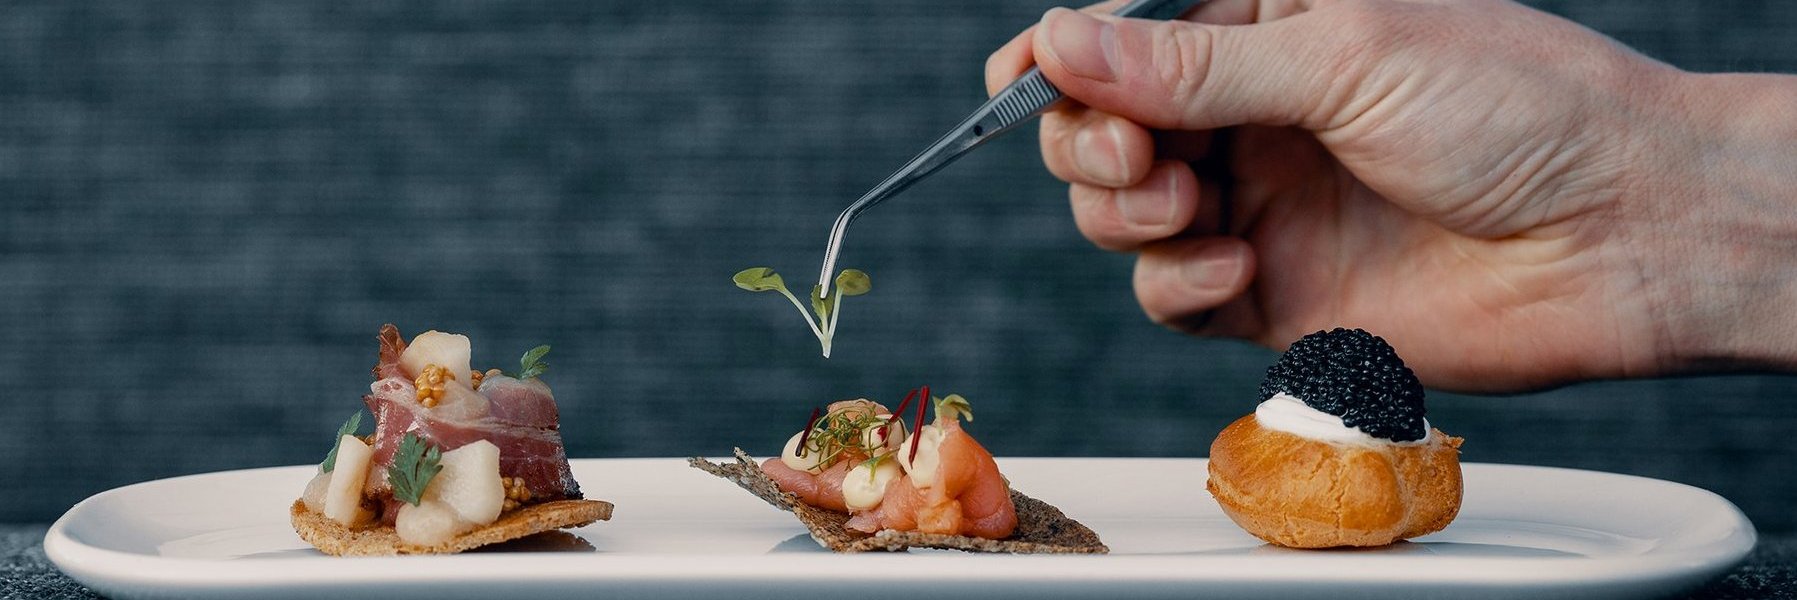 Gericht mit Speck, Lachs und Kaviar wird mit einer Küchenzange dekoriert